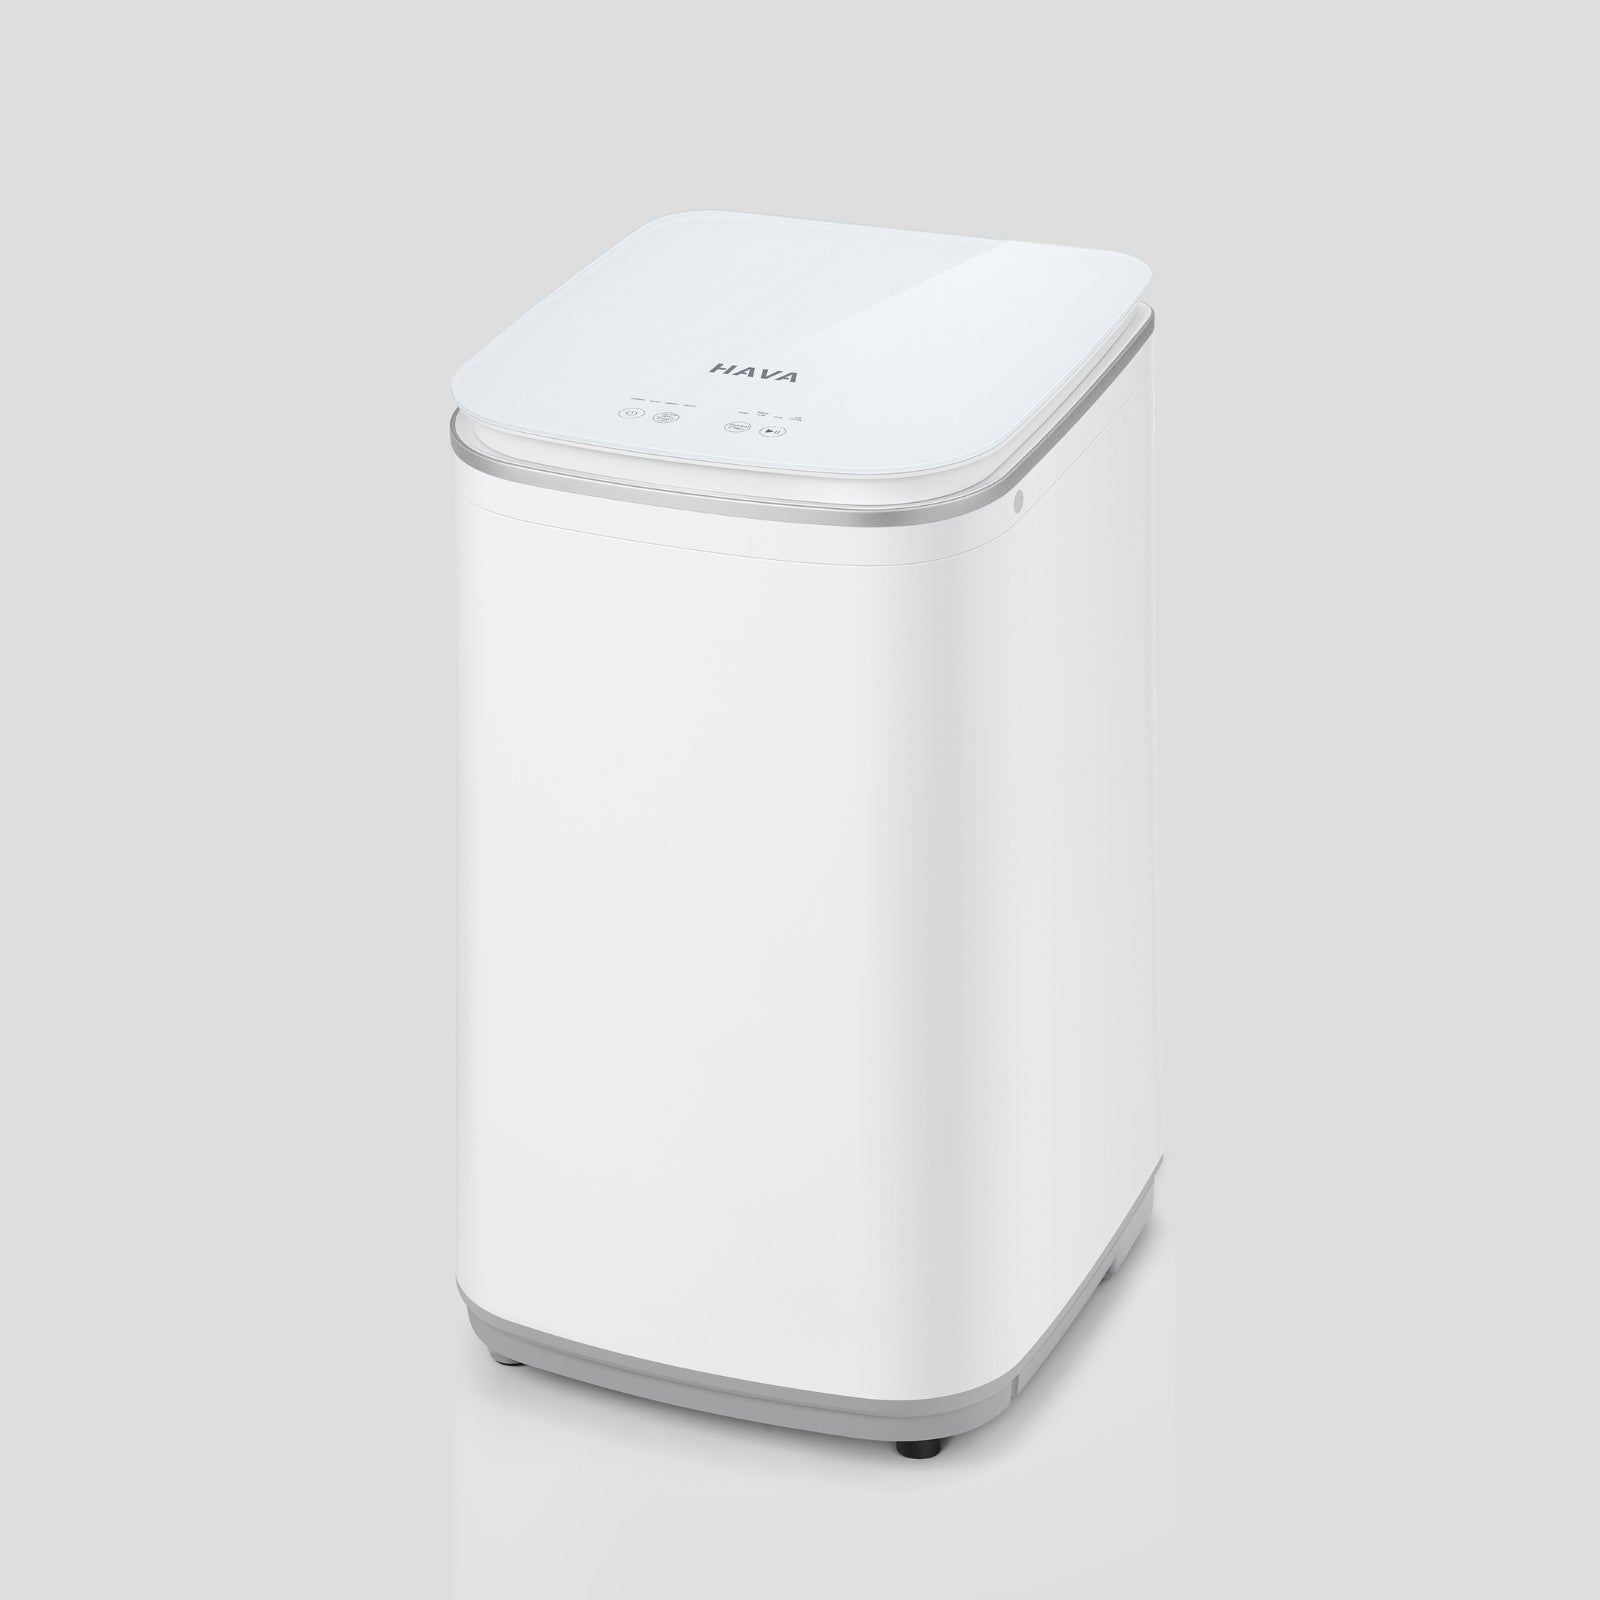 Go-clean's HAVA liten tvättmaskin med slät vit yta och minimalistisk design, visar den eleganta och funktionella formen som passar i alla moderna hemmiljöer.